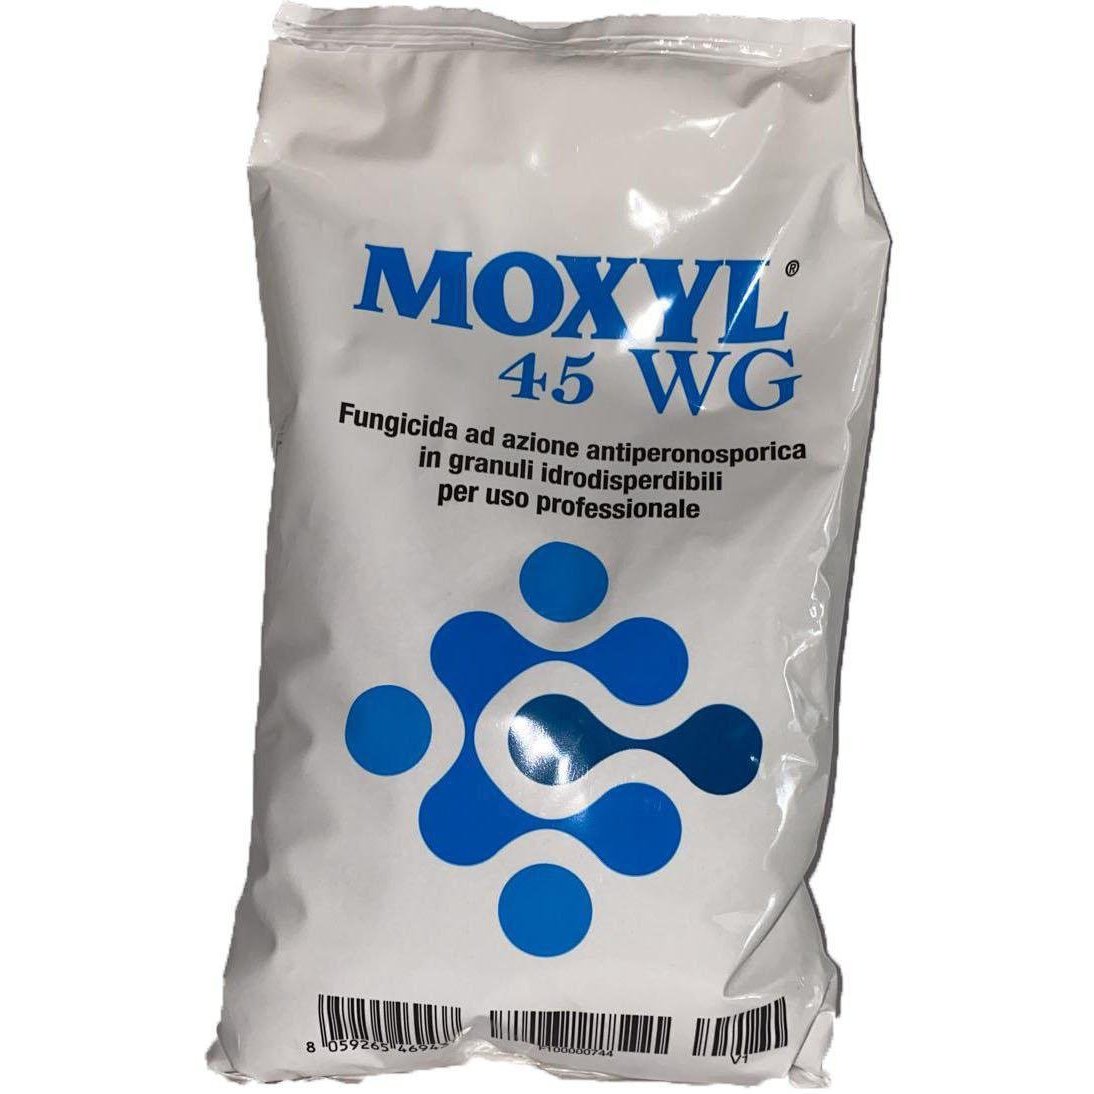 MOXYL 45 WG - fungicida ad azione antiperonosporica in granuli idrodispersibili per uso professionale